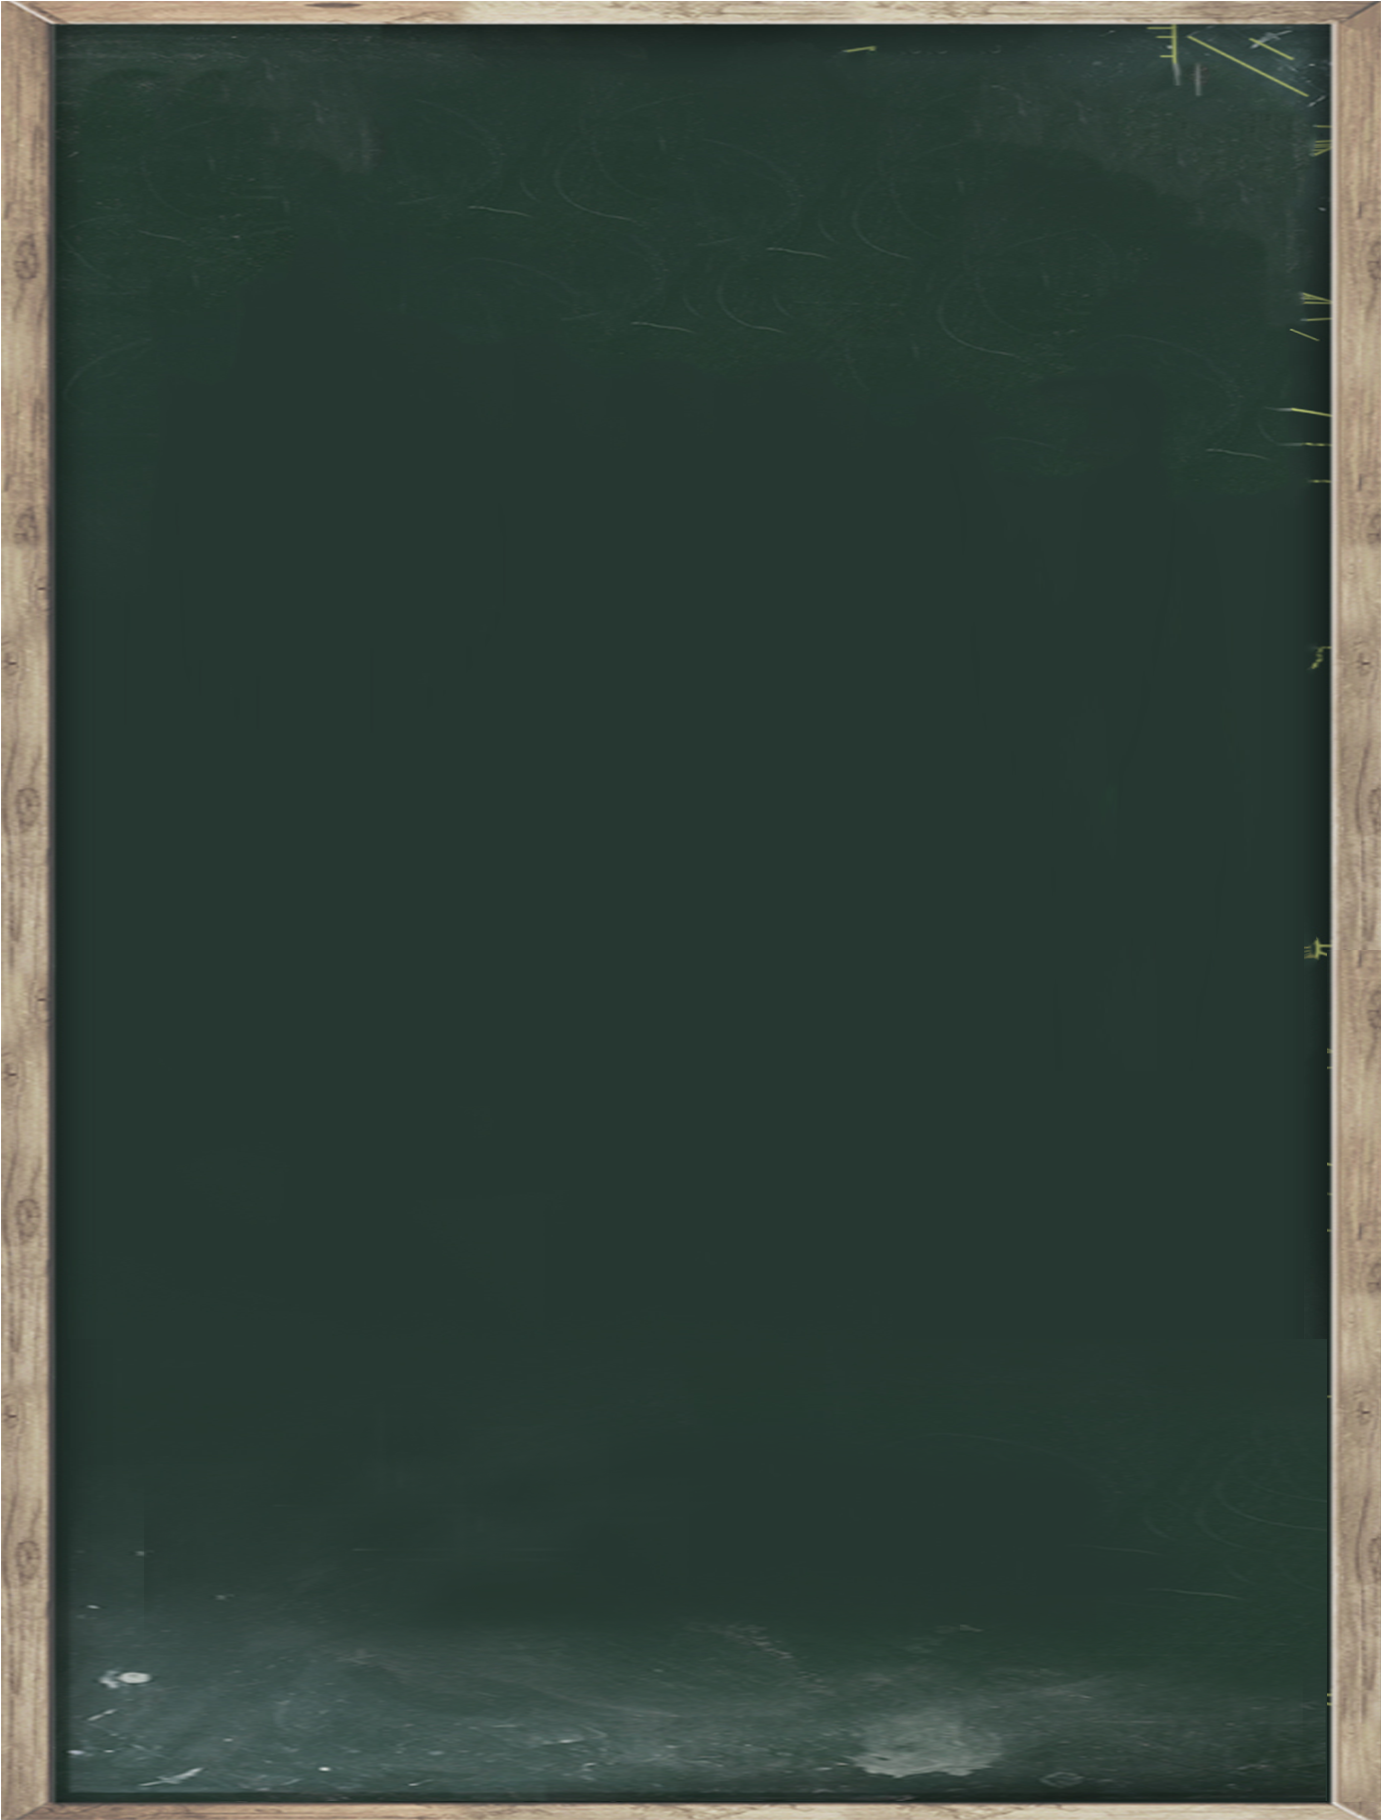 Empty Blackboard Texture PNG image